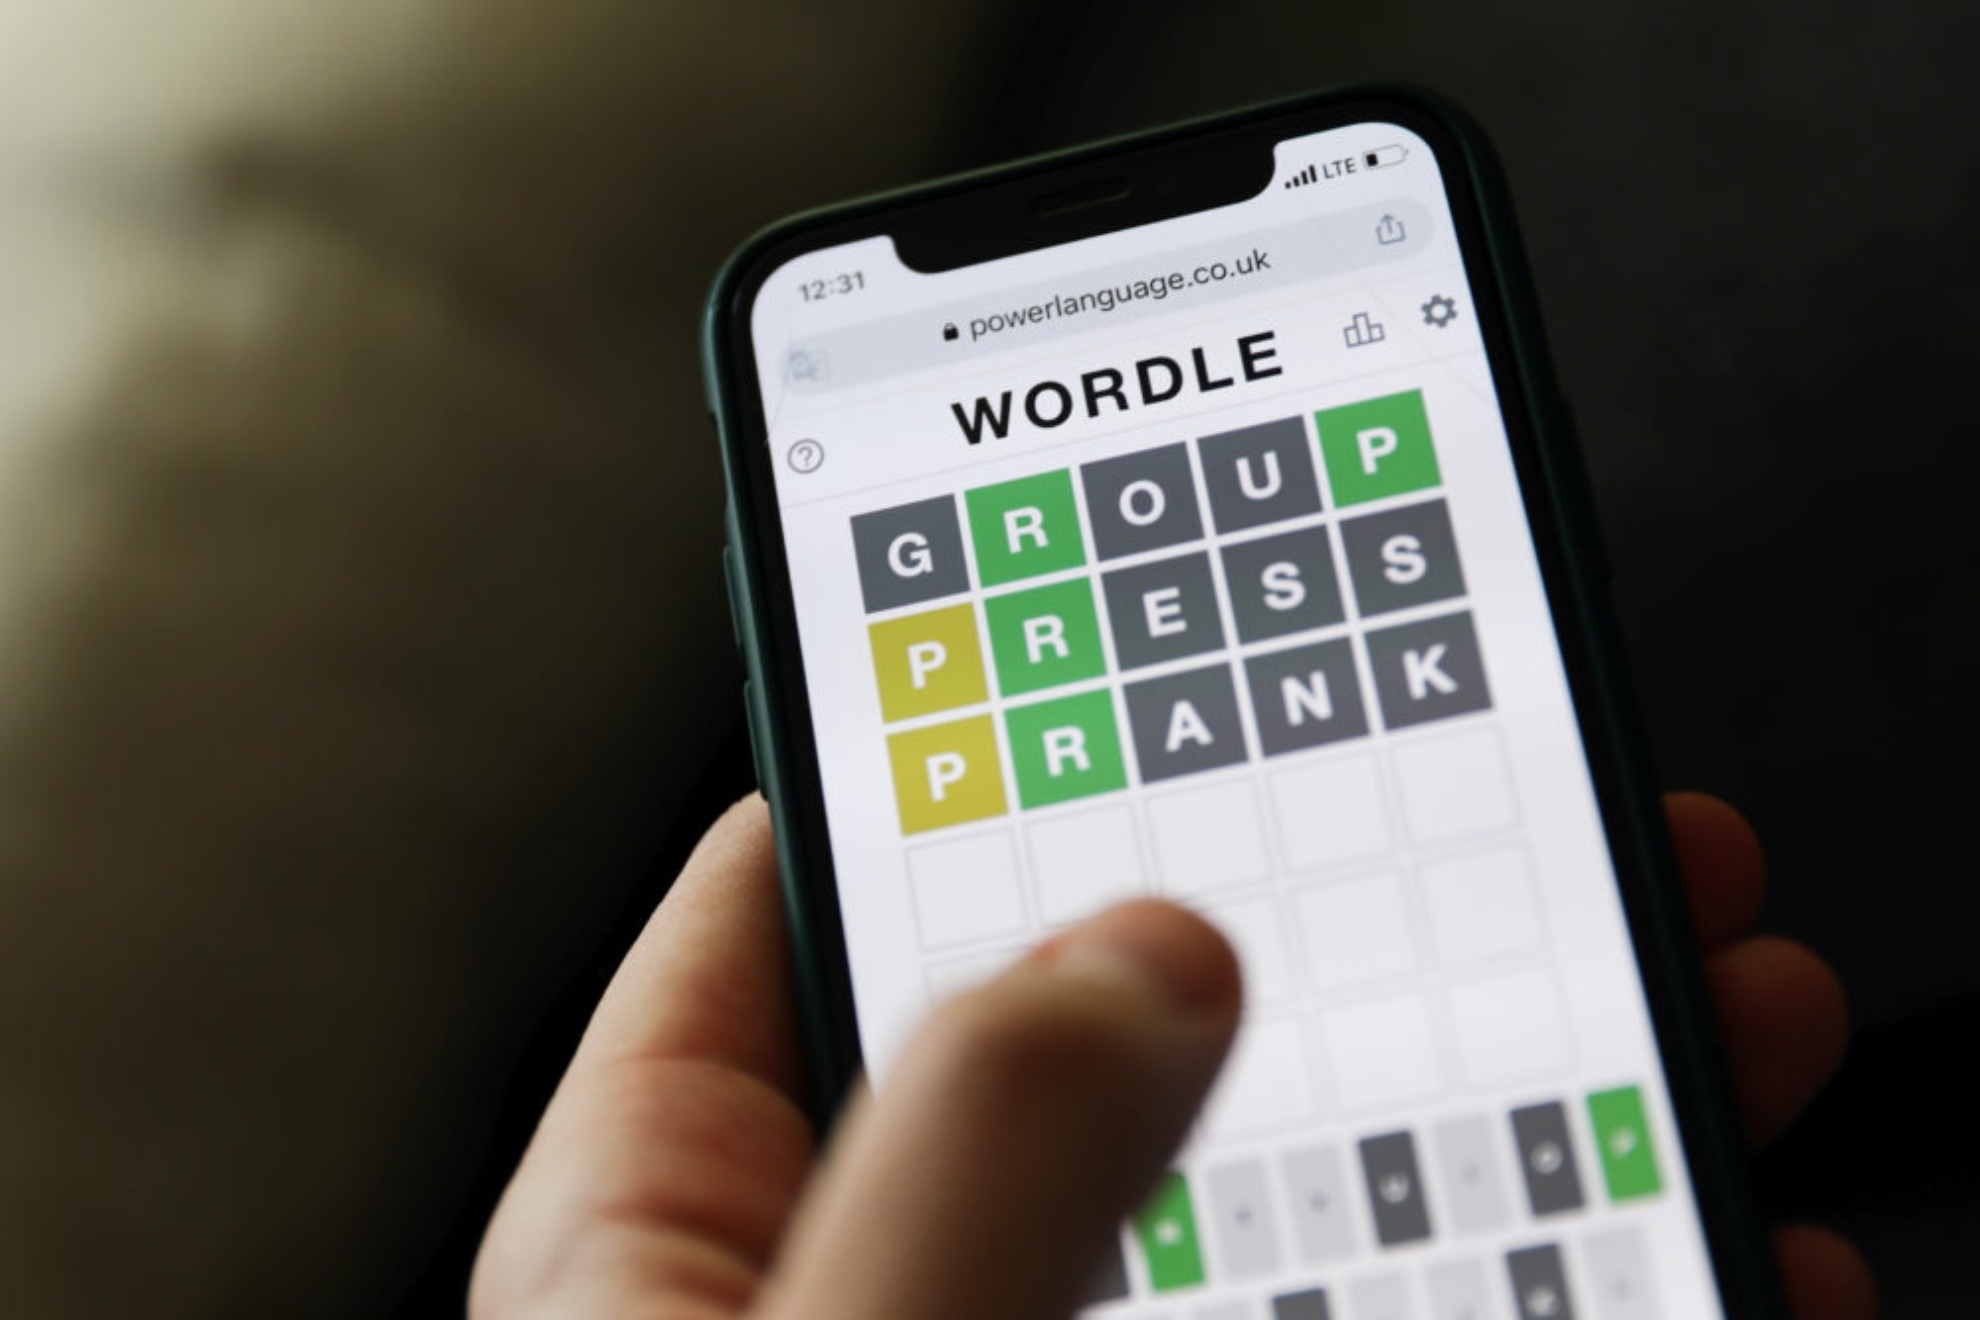 Wordle espaol hoy, 10 de abril: normal, tildes y cientfico | Soluciones y pistas para adivinar la palabra